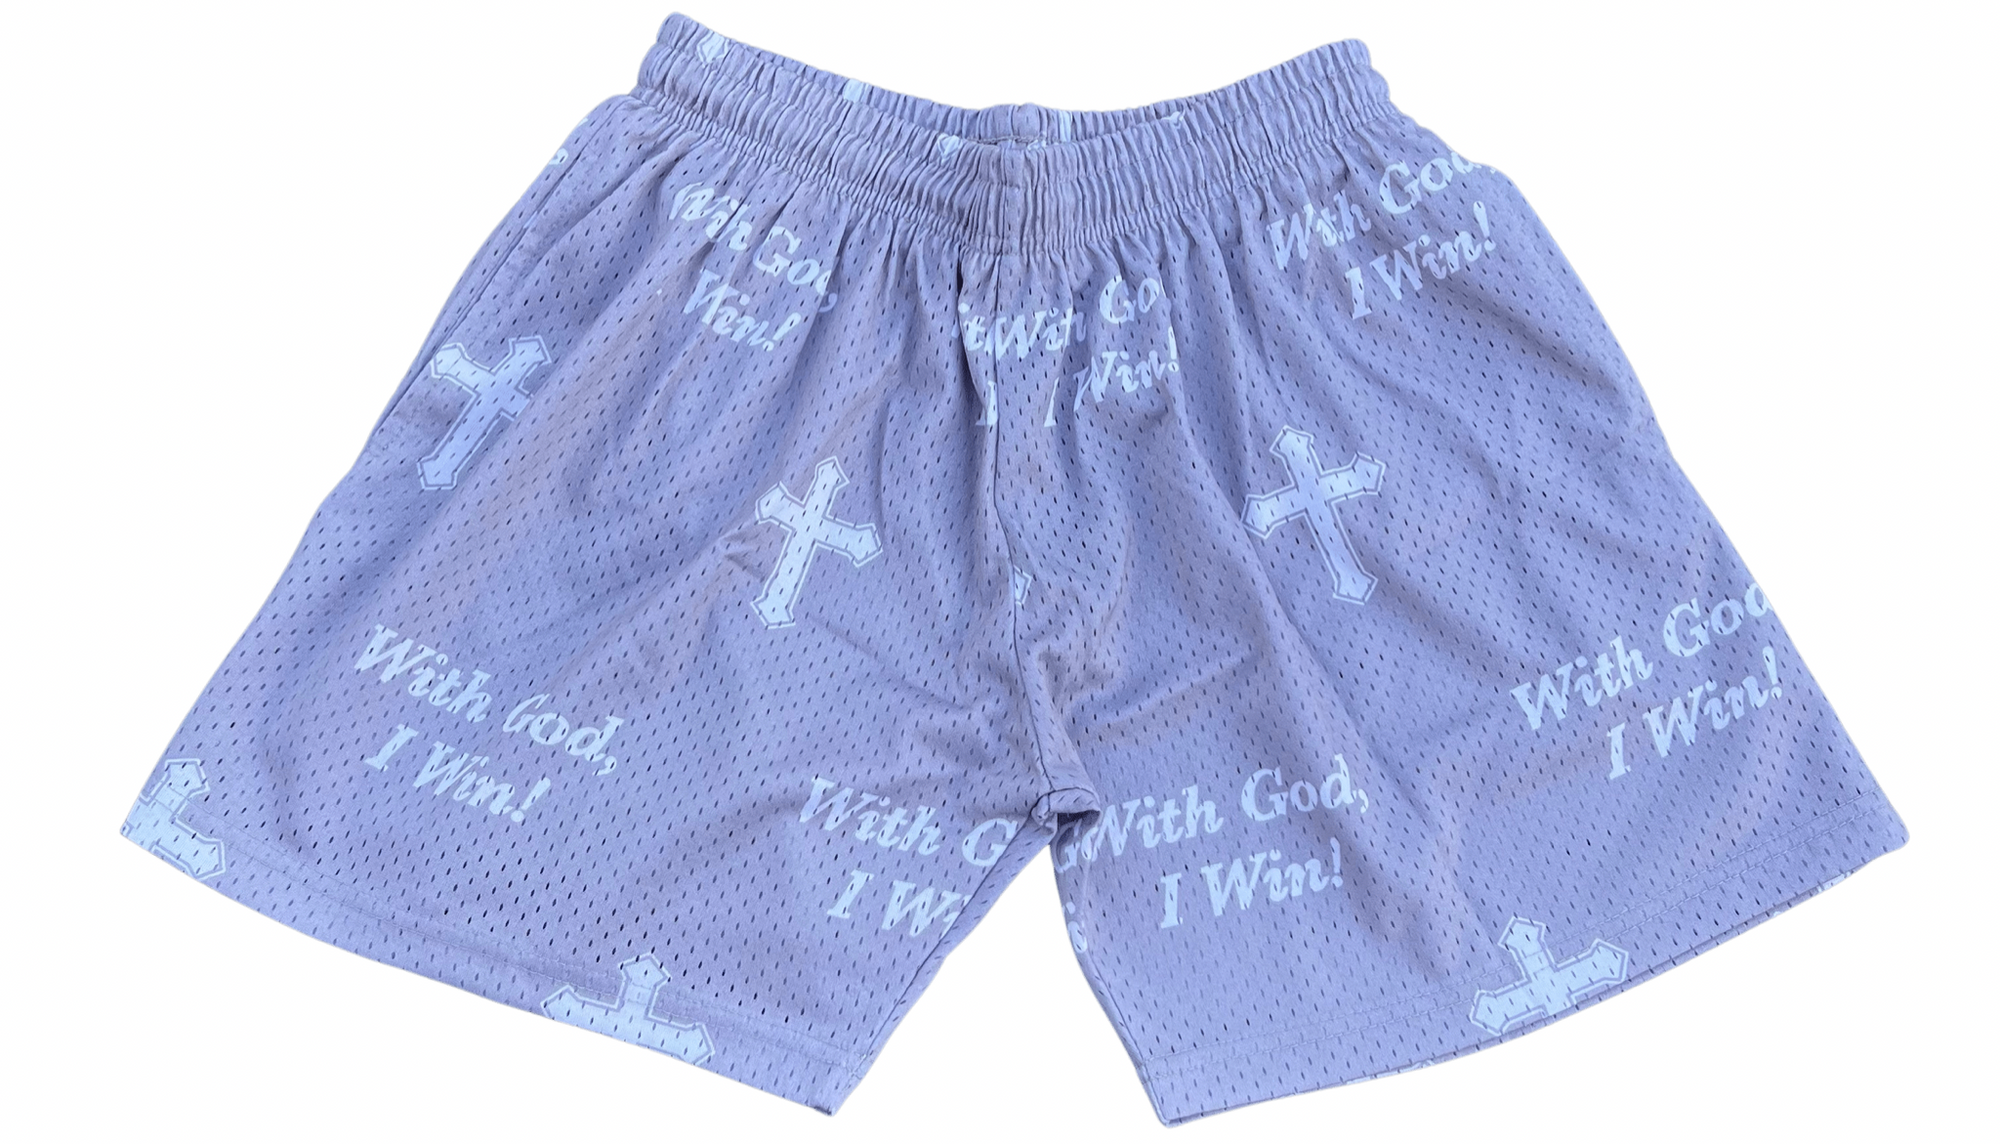 WGIW Mesh Shorts - With God, I Win! Clothing